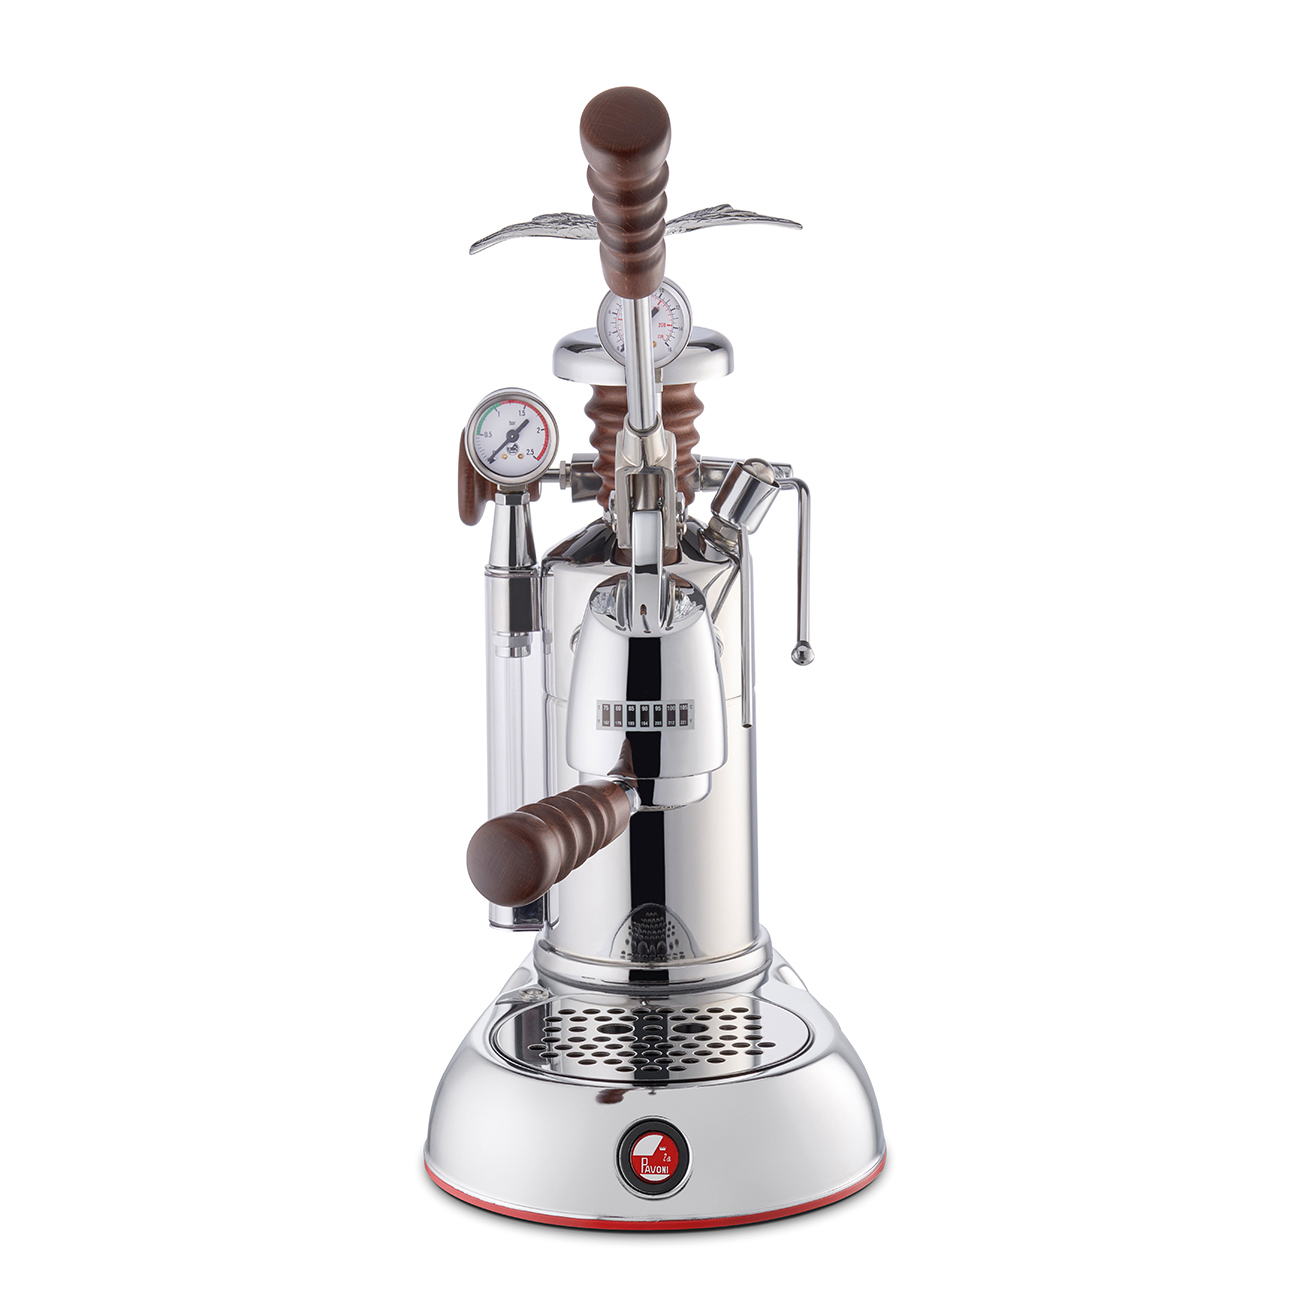 La Pavoni Esperto Abile espresso machine